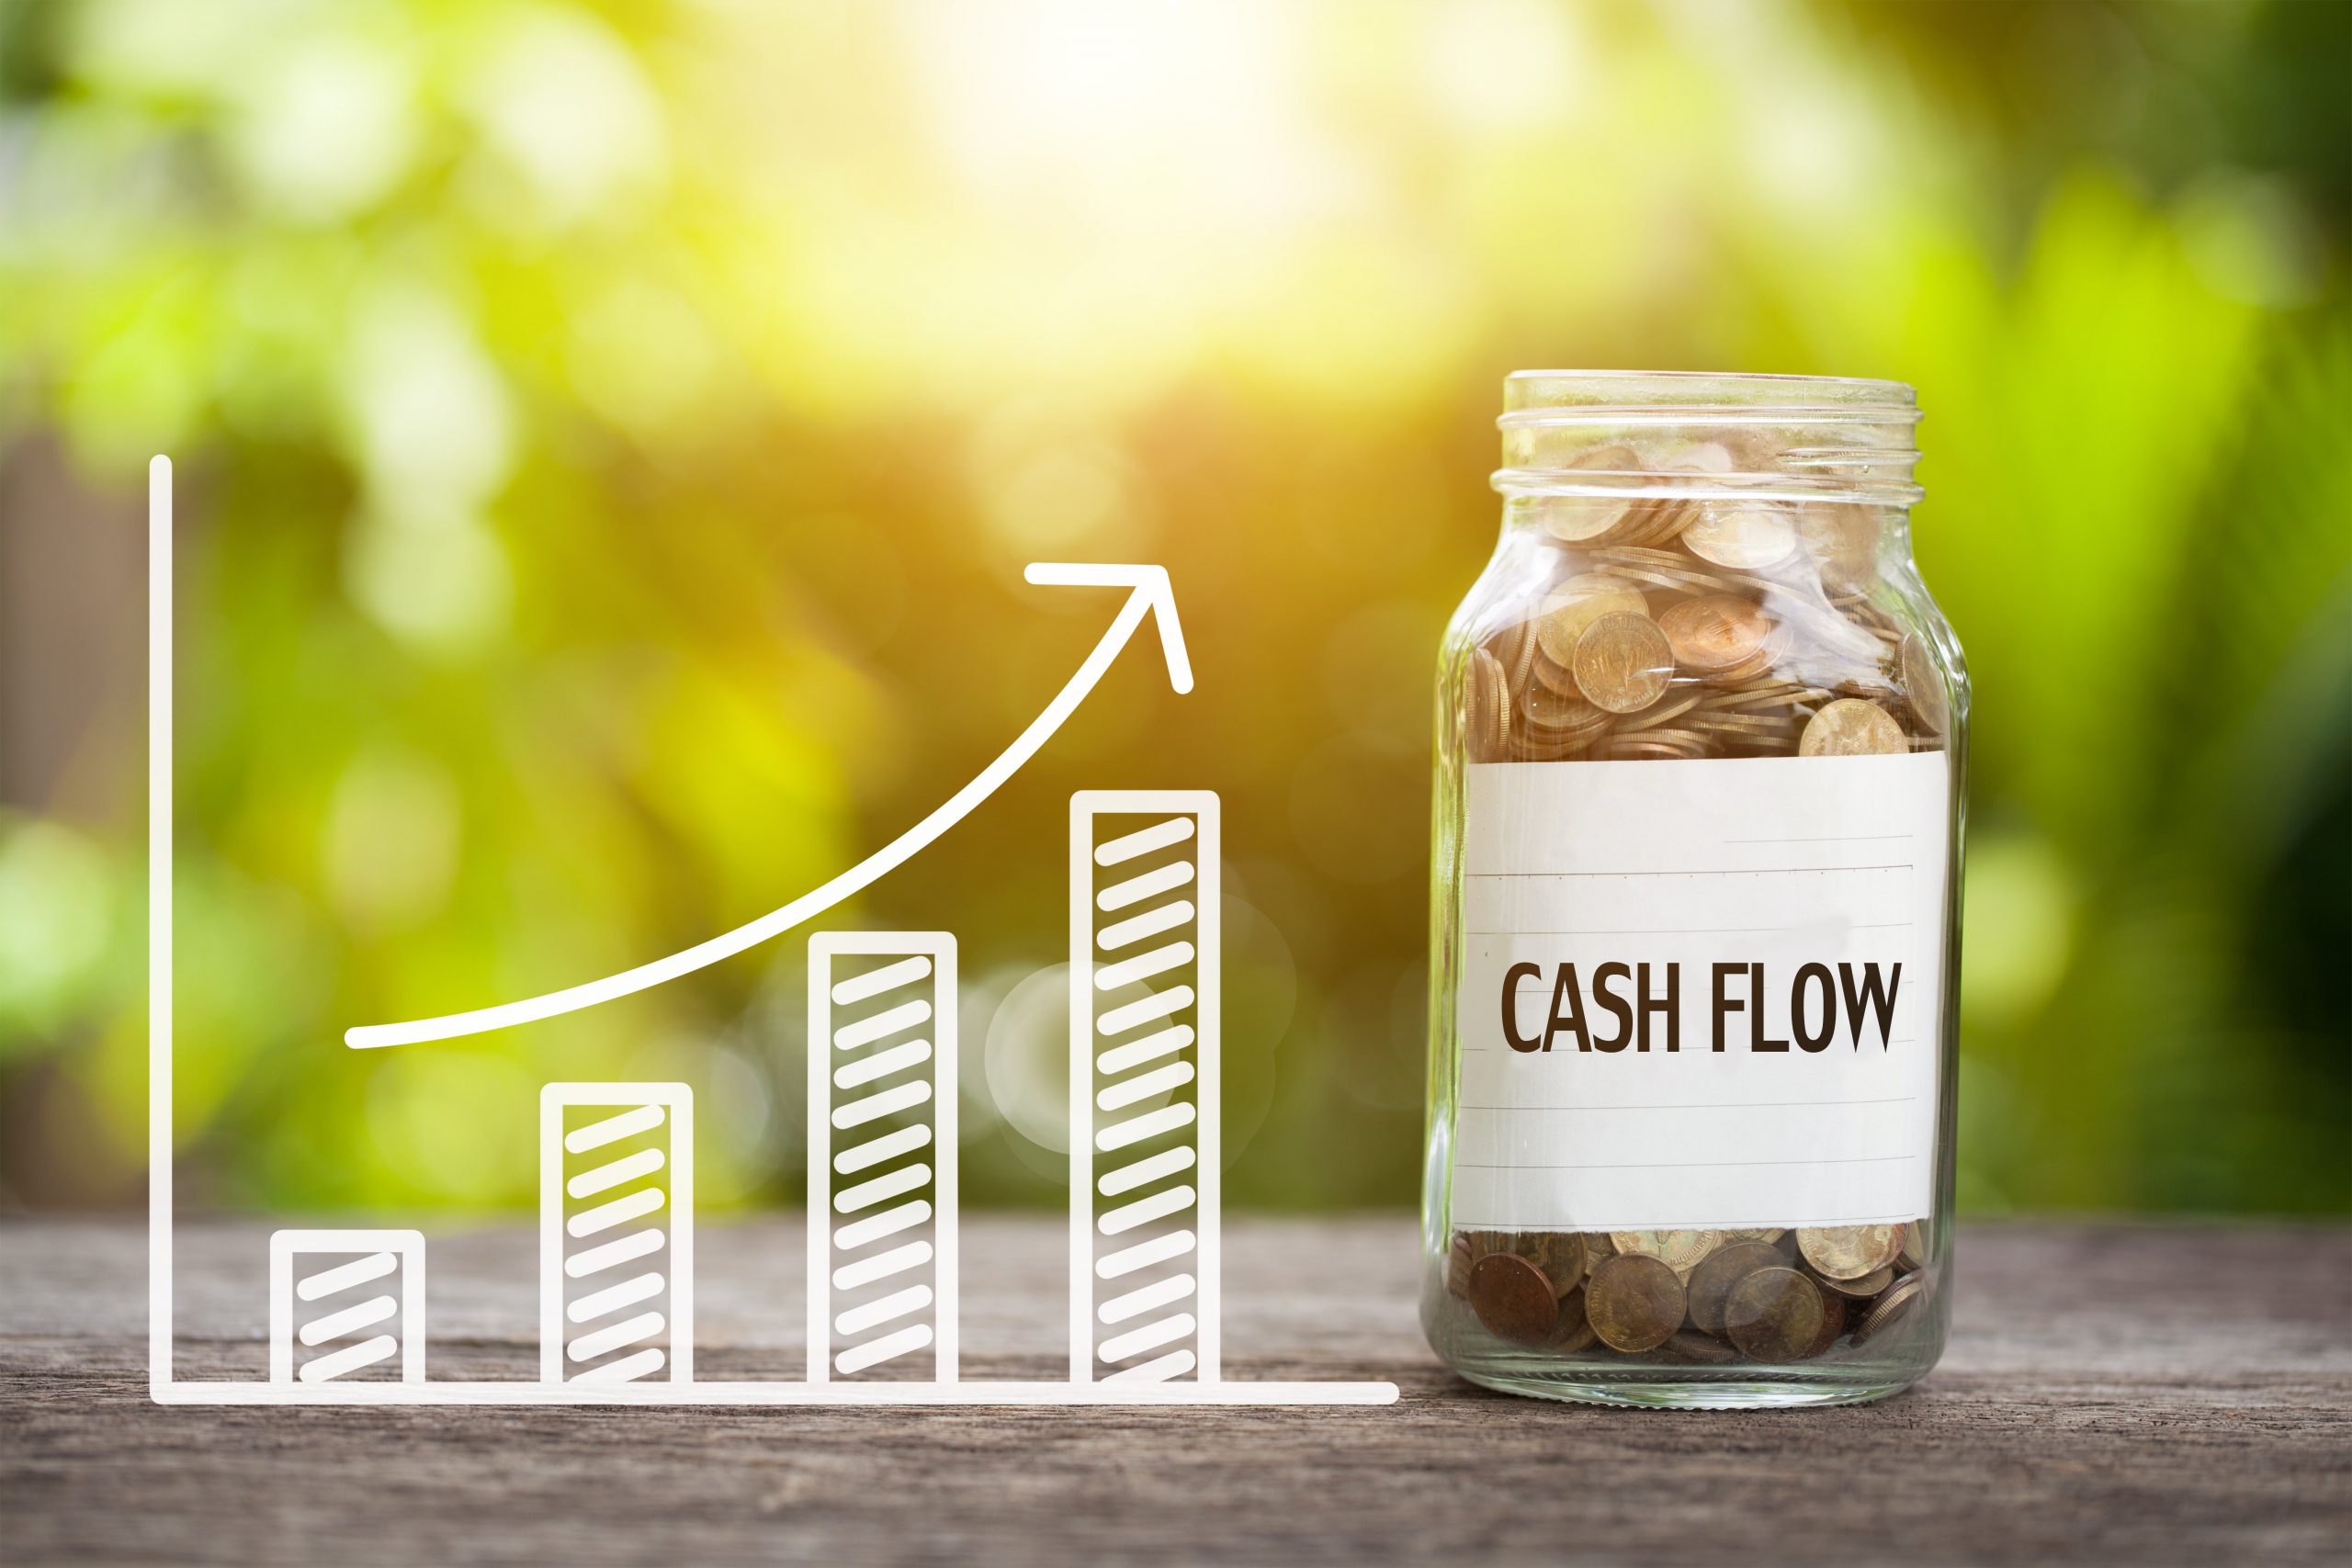 Improve cash flow